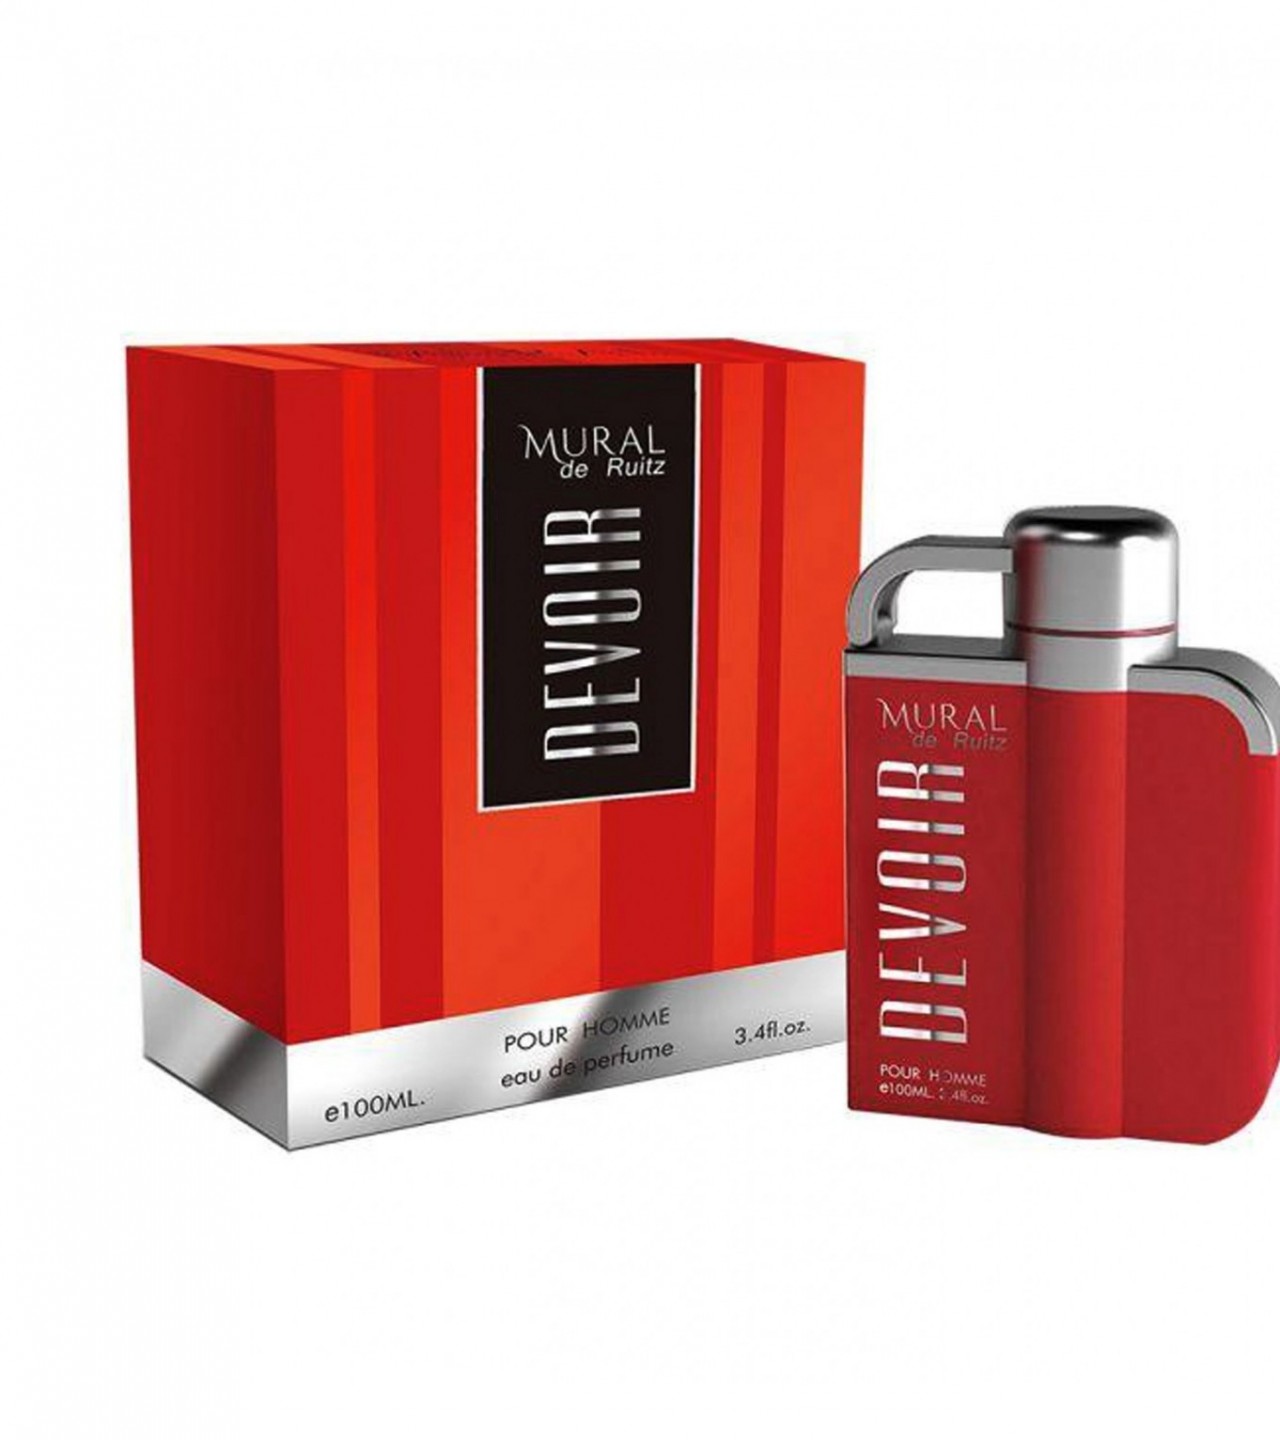 Mural Devoir Perfume For Men – EDP – 100 ml